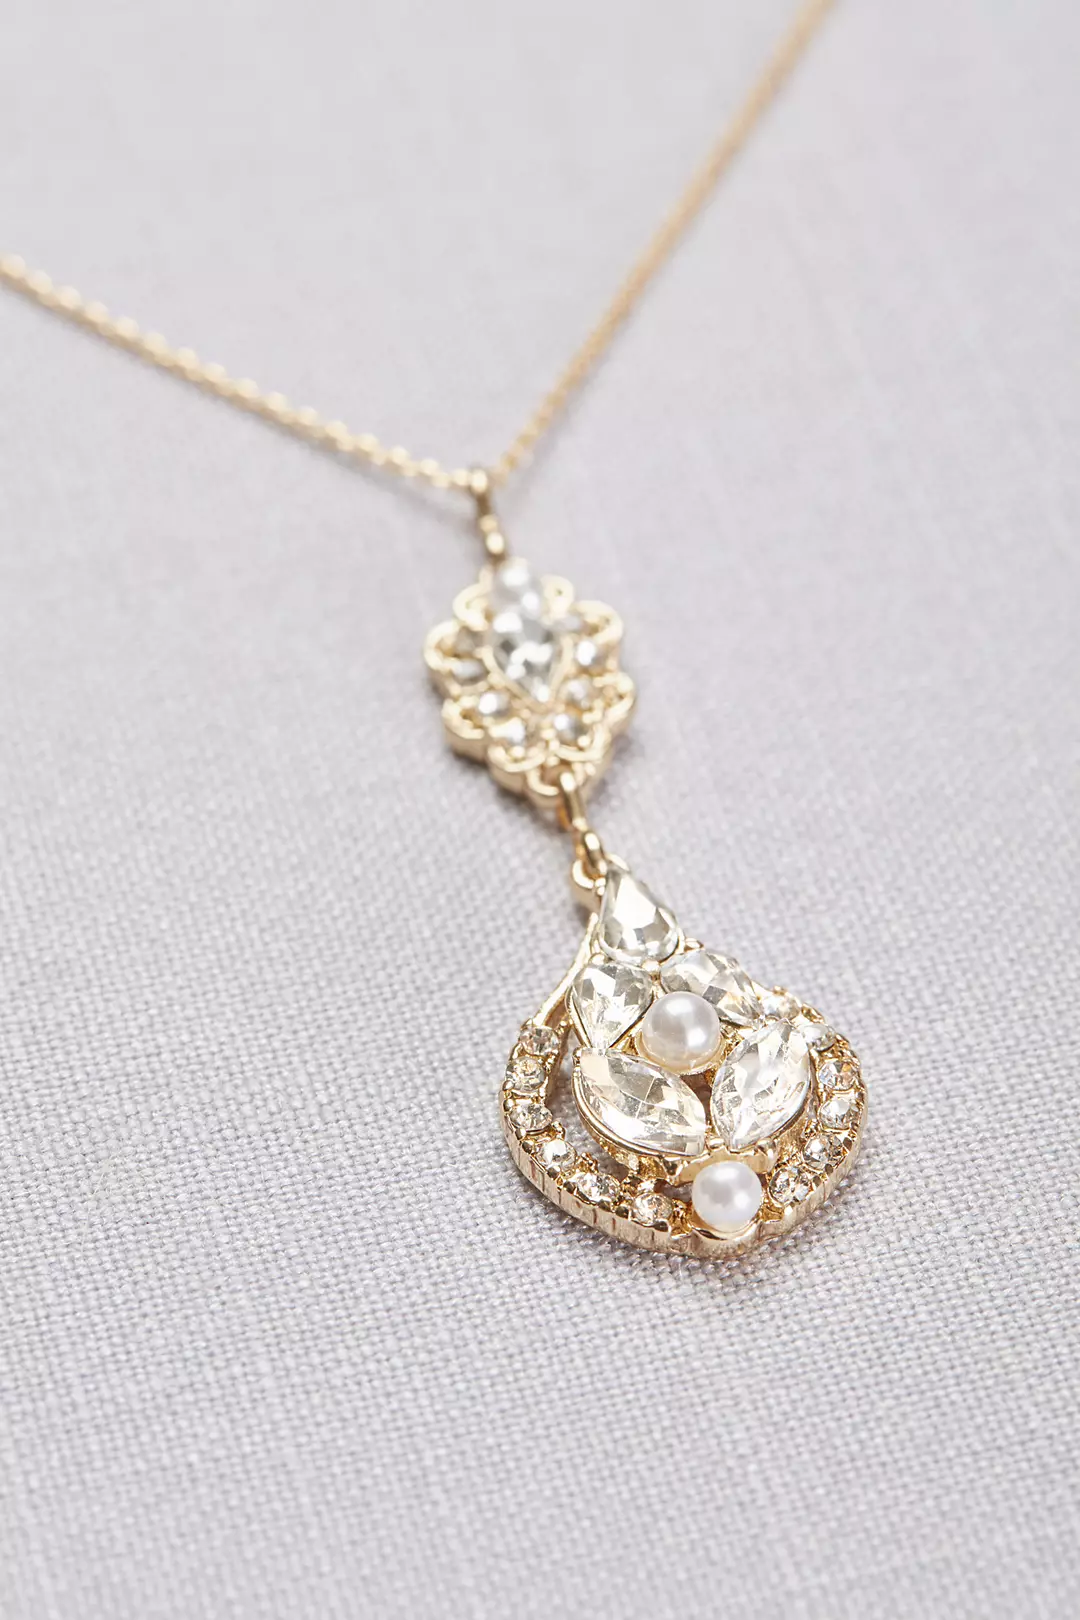 Vintage-Inspired Crystal Cluster Necklace Image 2